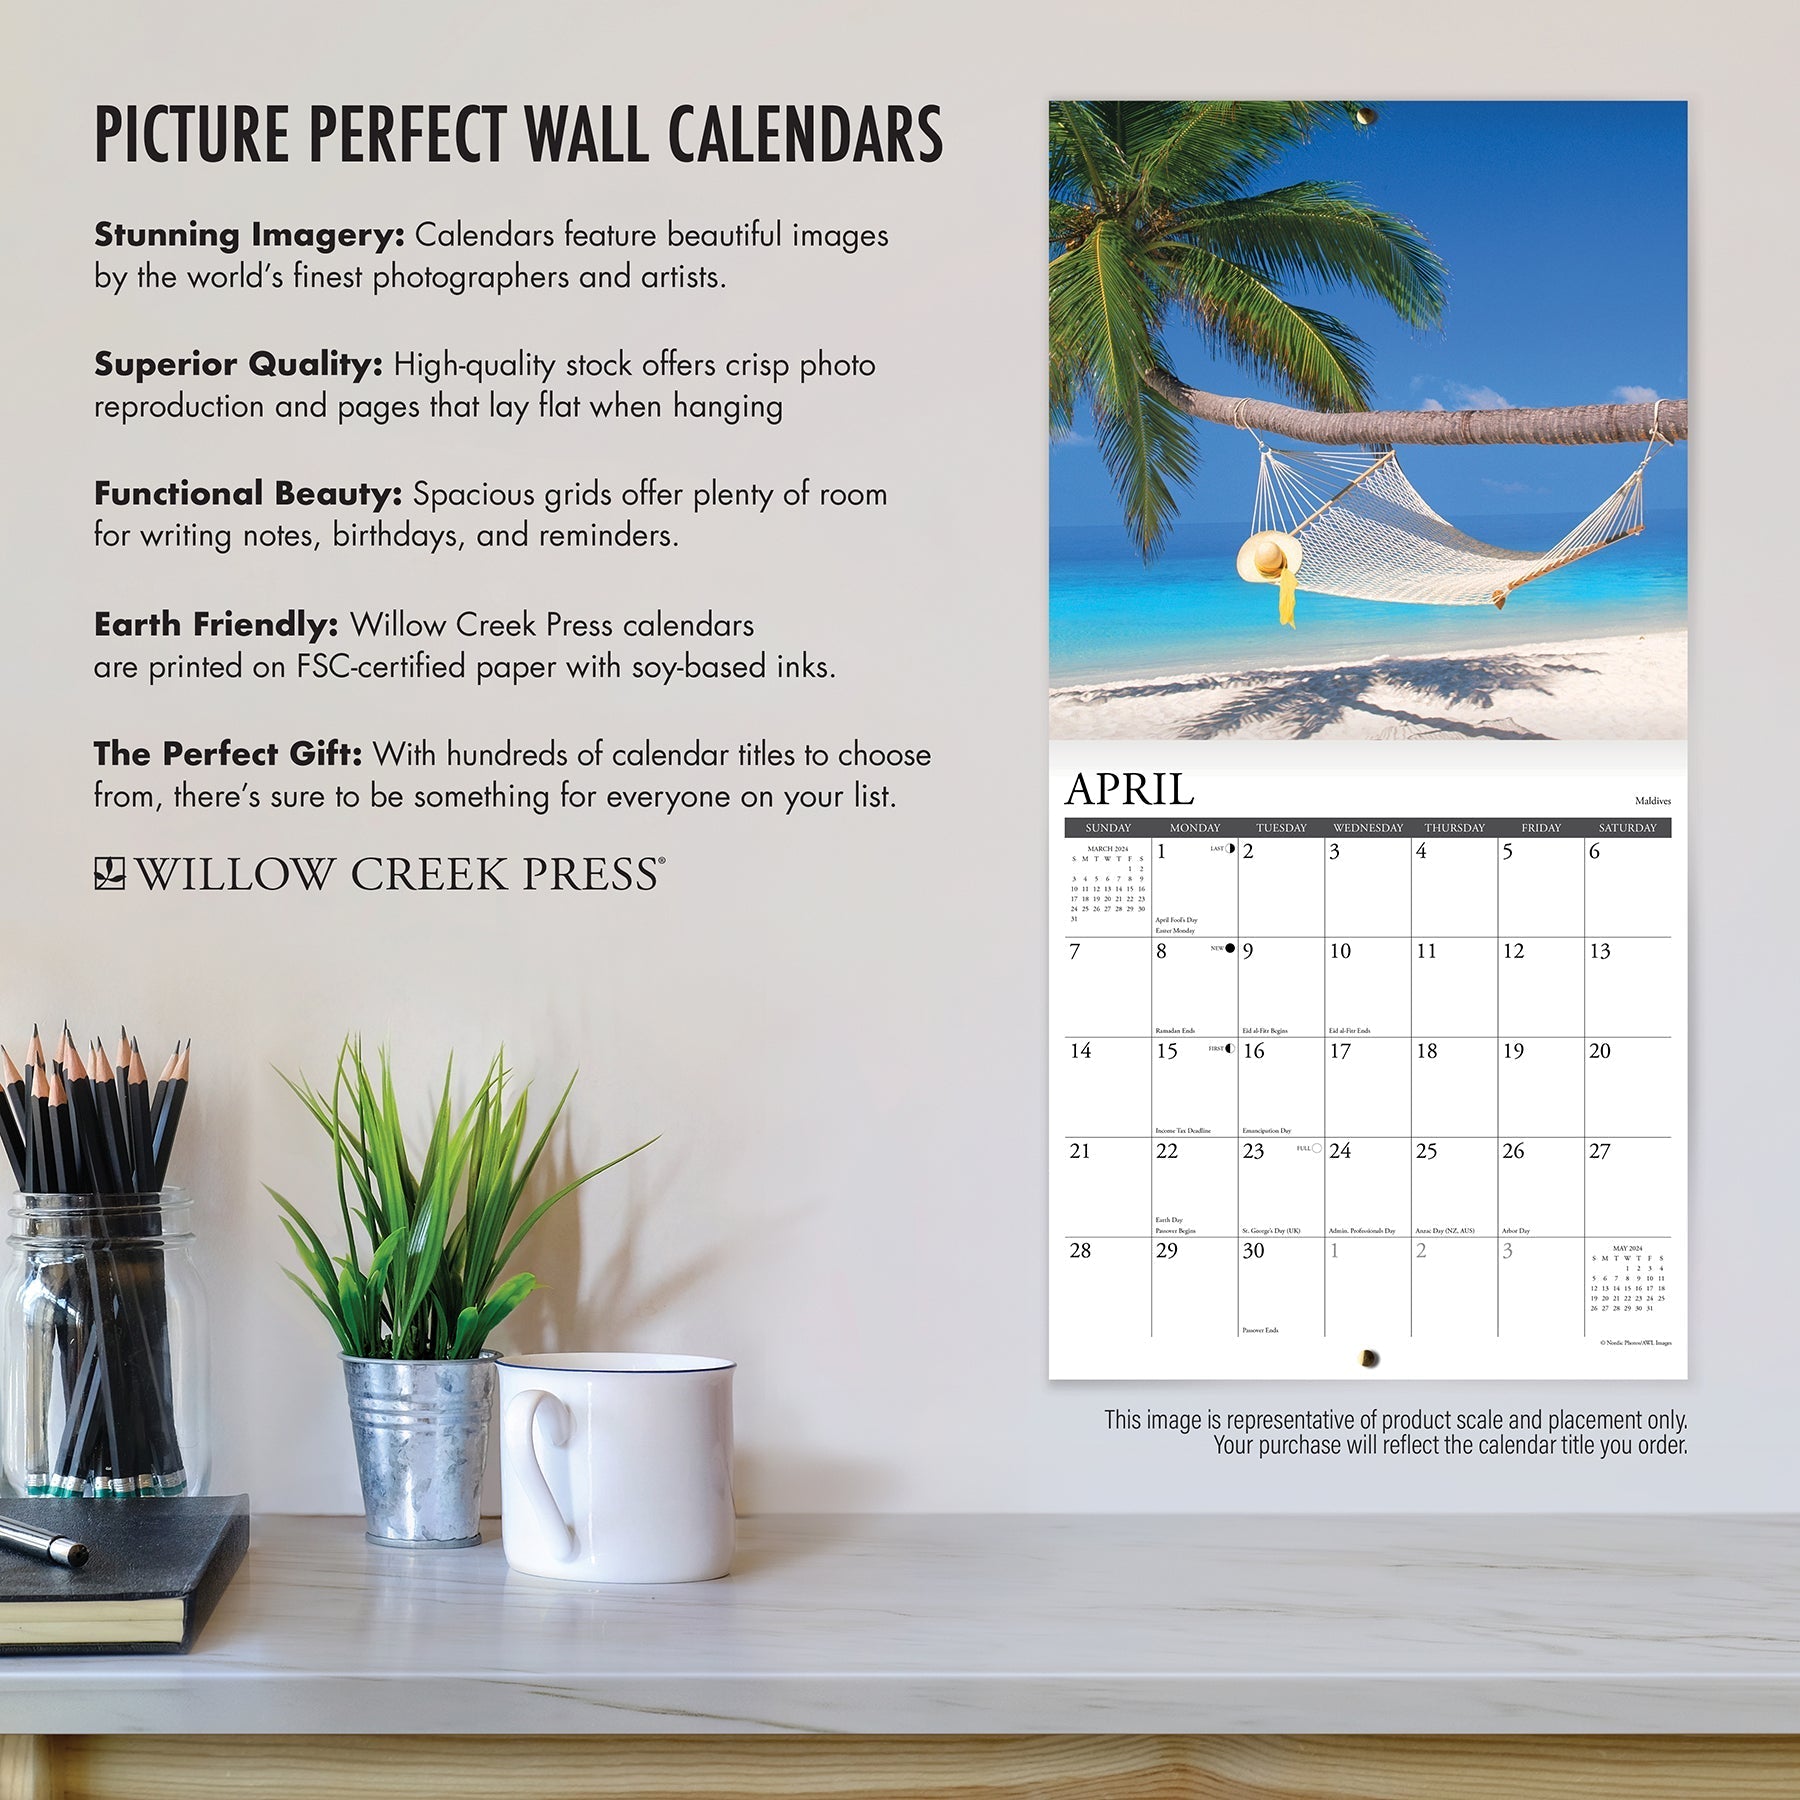 2024 Ah, The Beach! - Wall Calendar